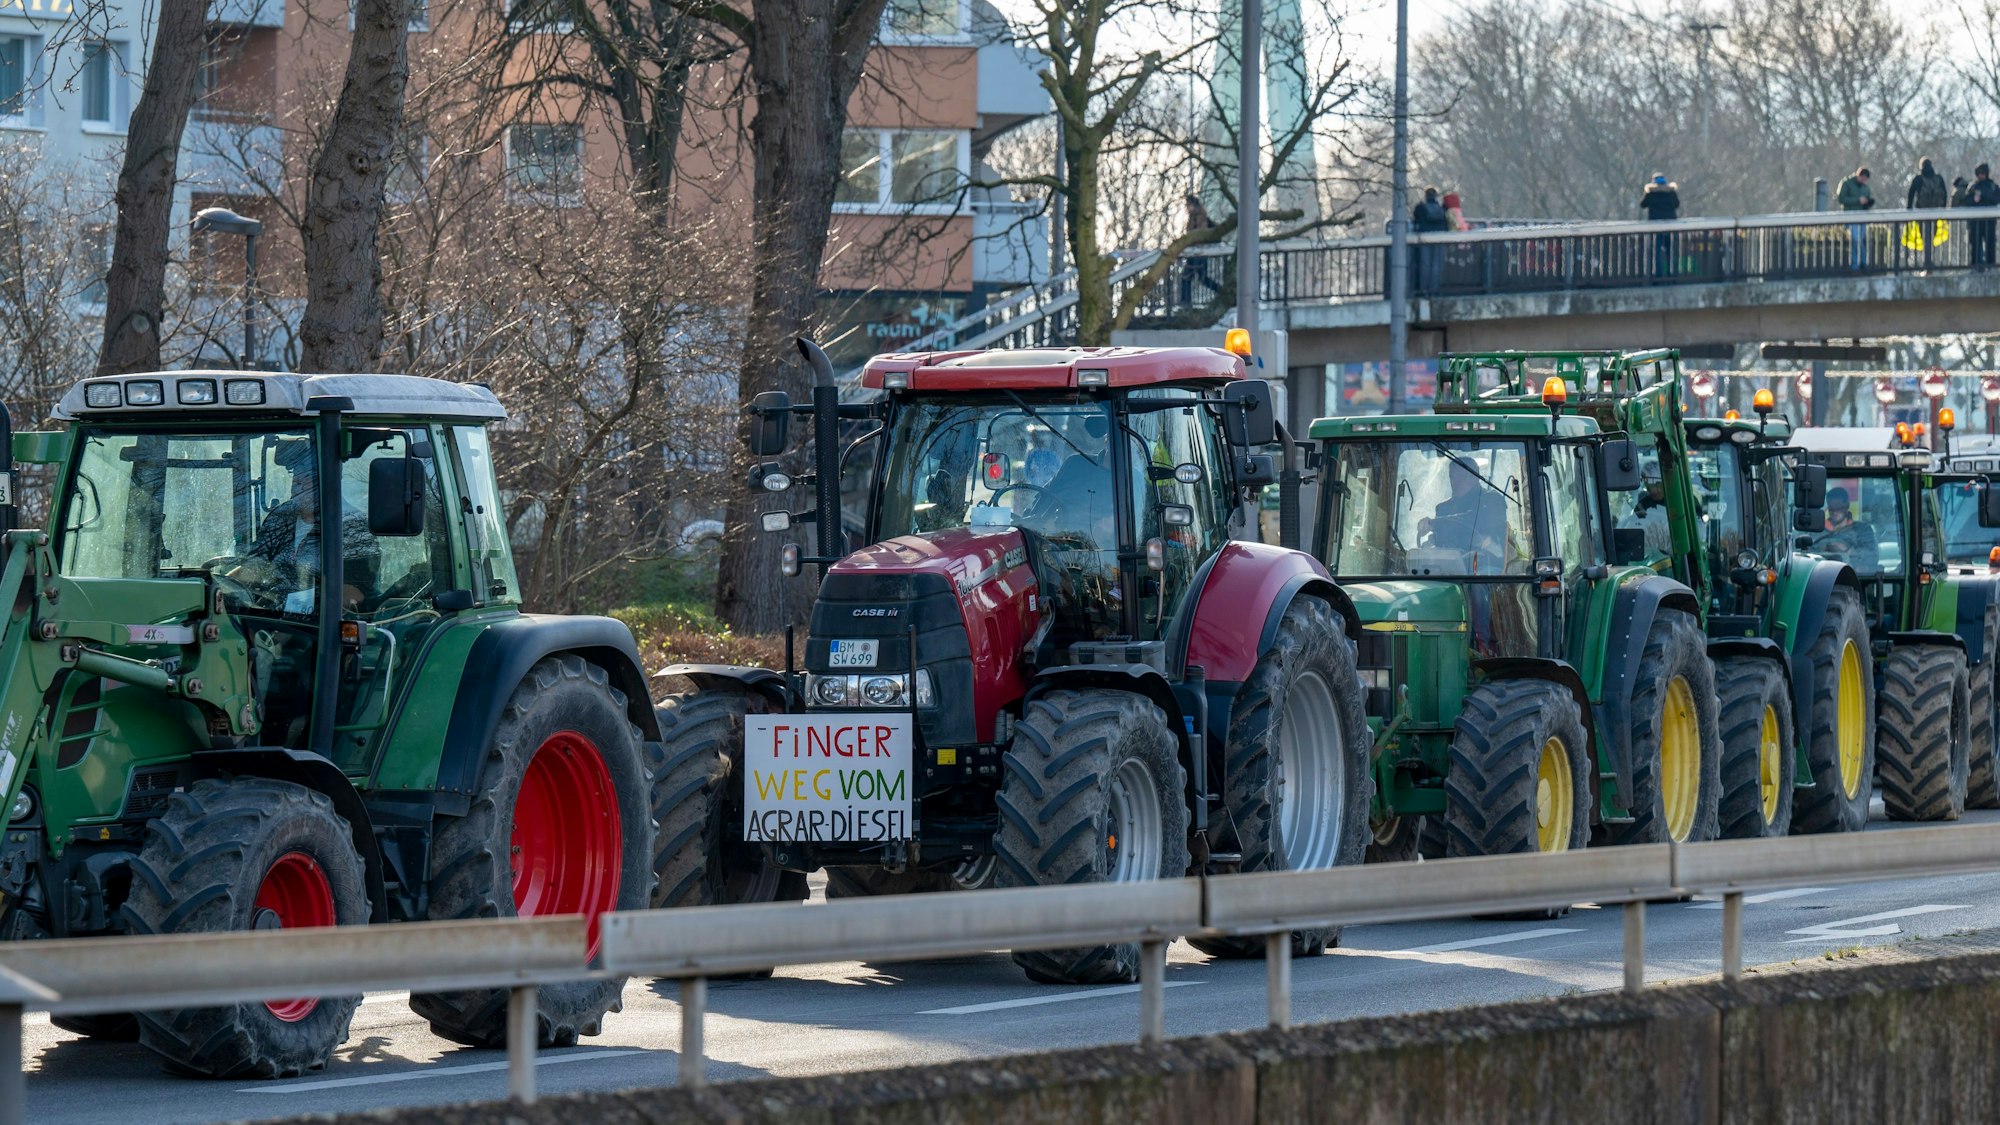 Ein Zug von fünf Traktoren fährt über die Opladener Straße in Deutz. Am zweiten Traktor ist ein Plakat mit der Aufschrift „Finger weg vom Agrardiesel“ angebracht. Im Bildhintergrund ist ein Stützpfeiler der Deutzer Brücke zu sehen.